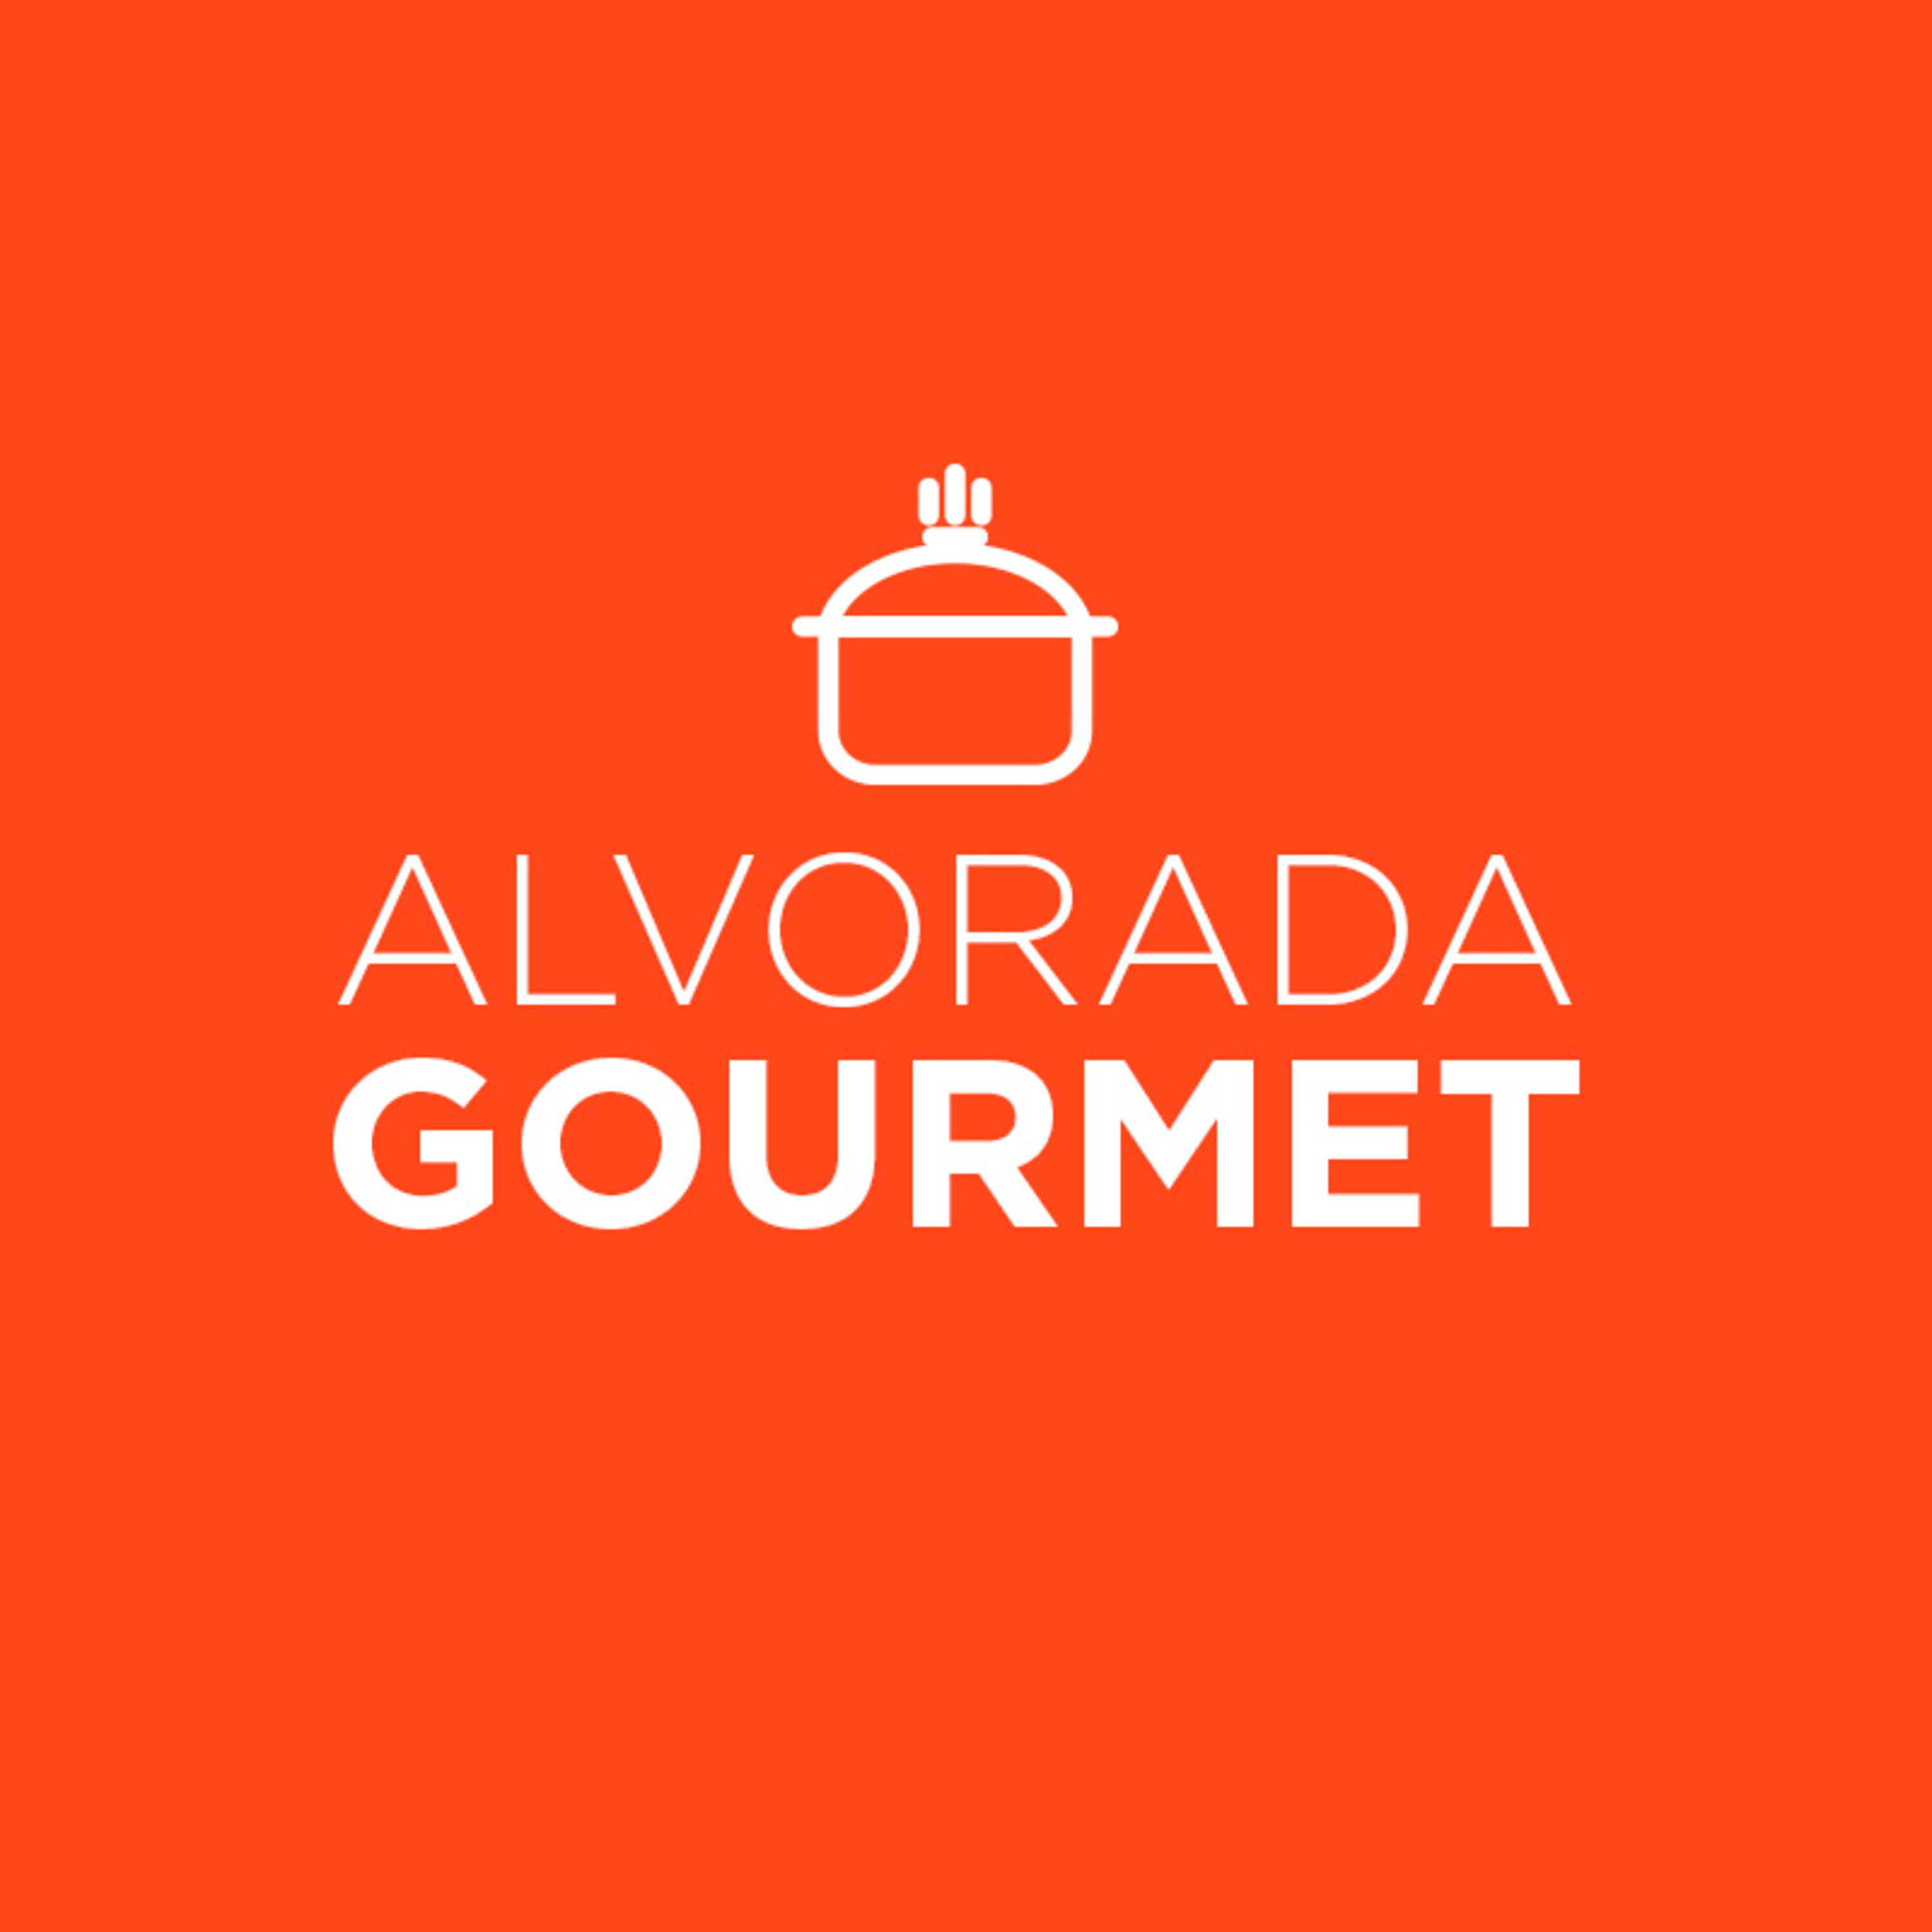 Alvorada Gourmet - Associação dos Restaurantes da Boa Lembrança